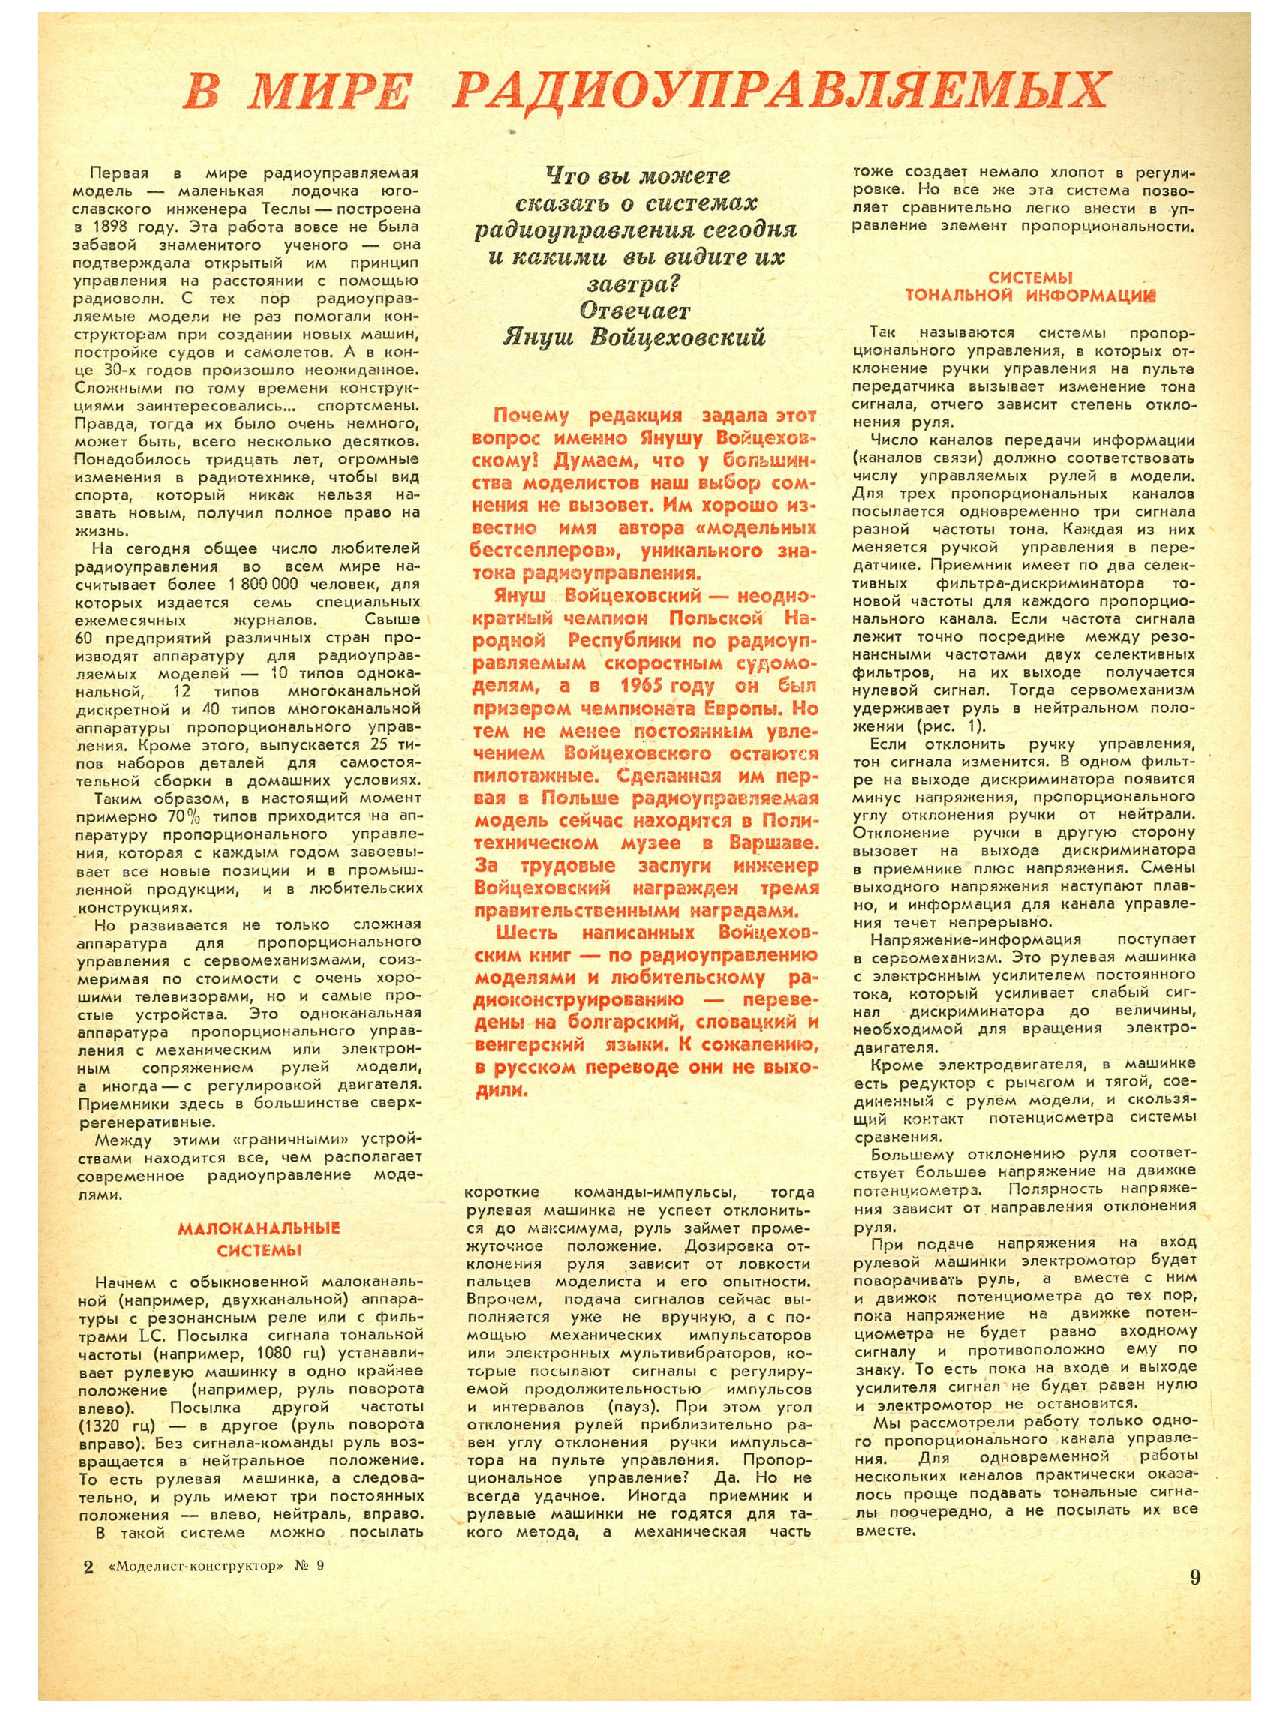 МК 9, 1970, 9 c.